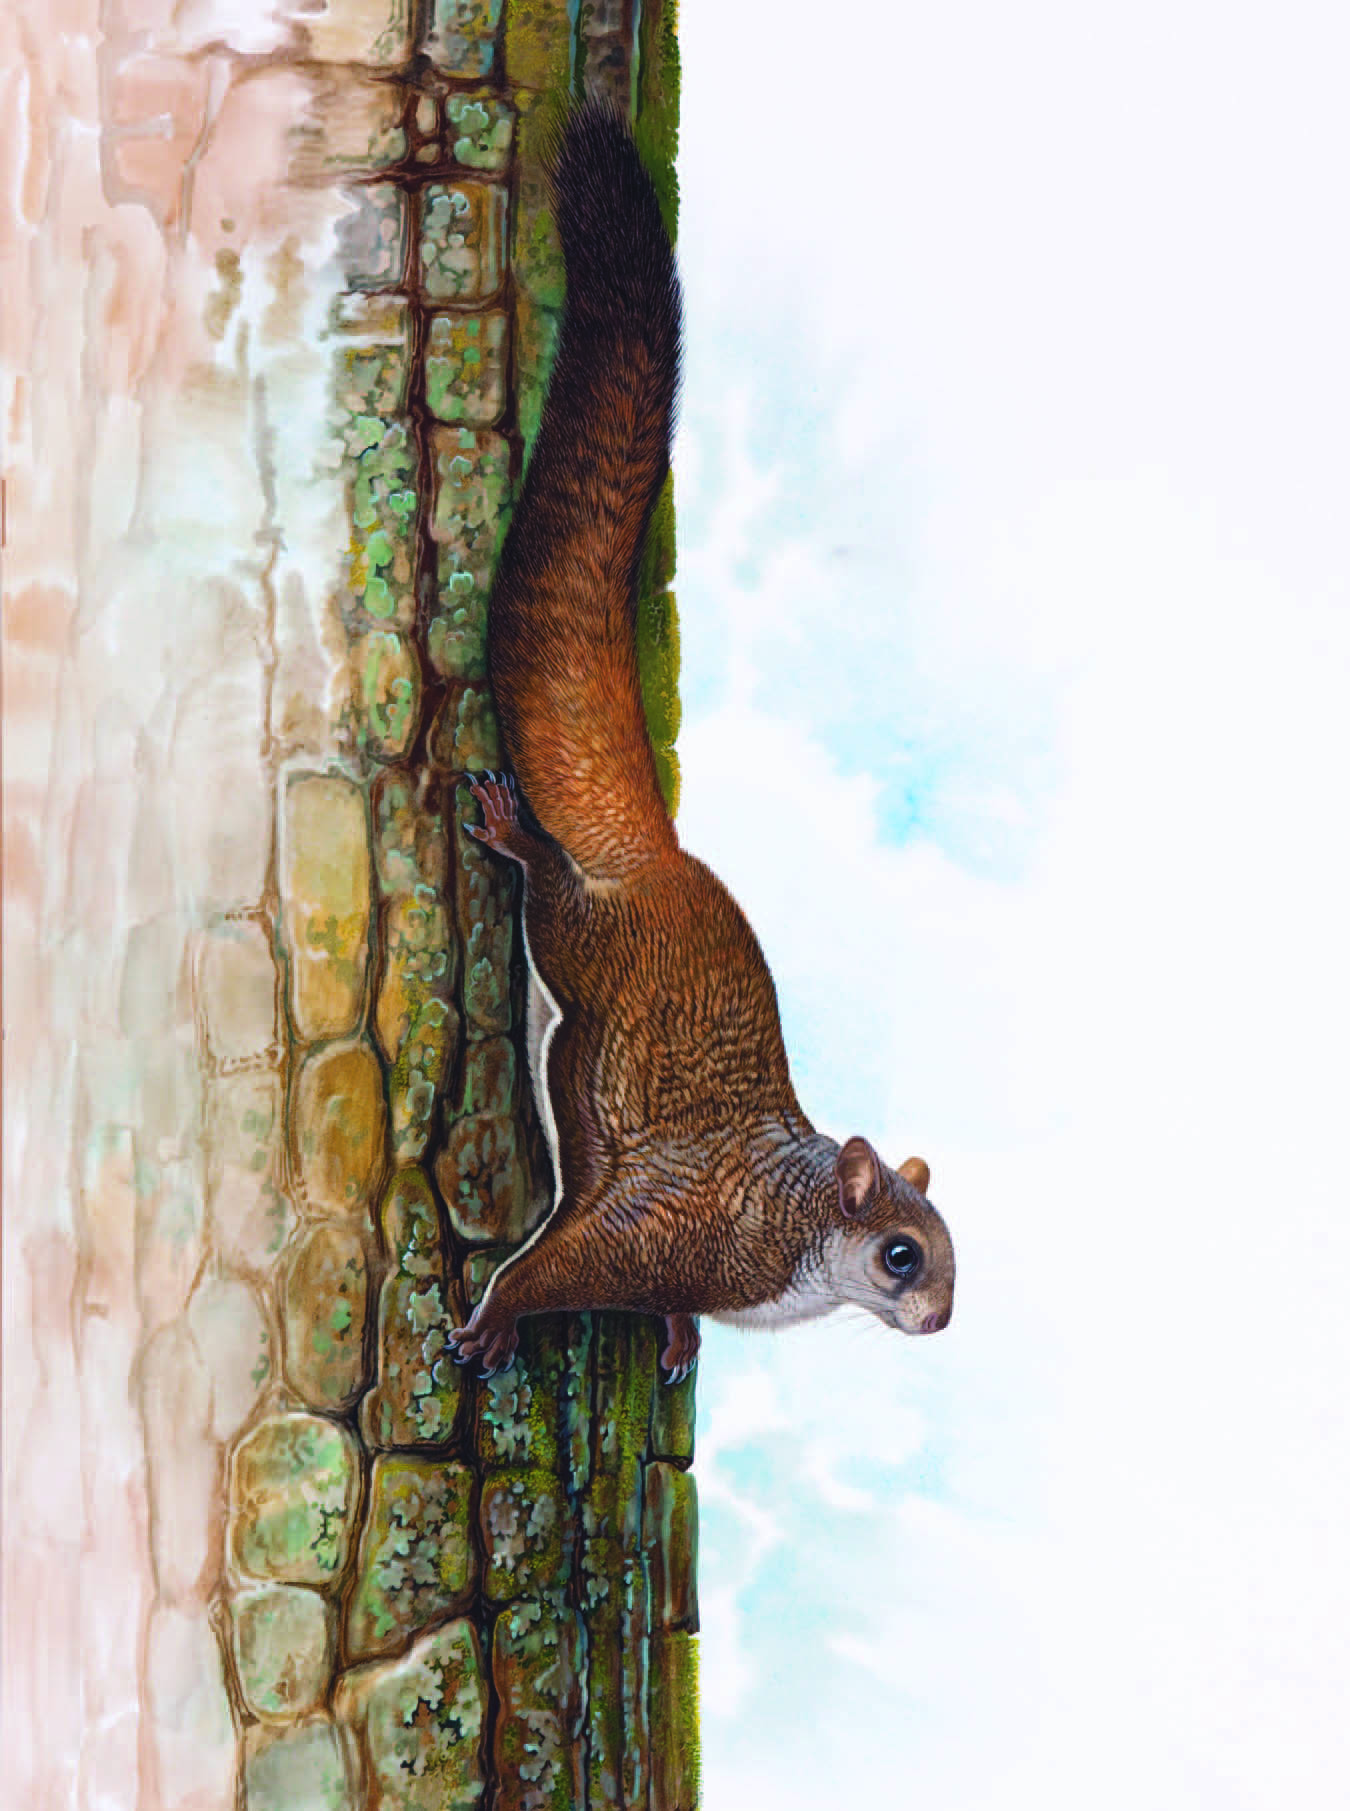 Kashmir Flying Squirrel / Eoglaucomys fimbriatus